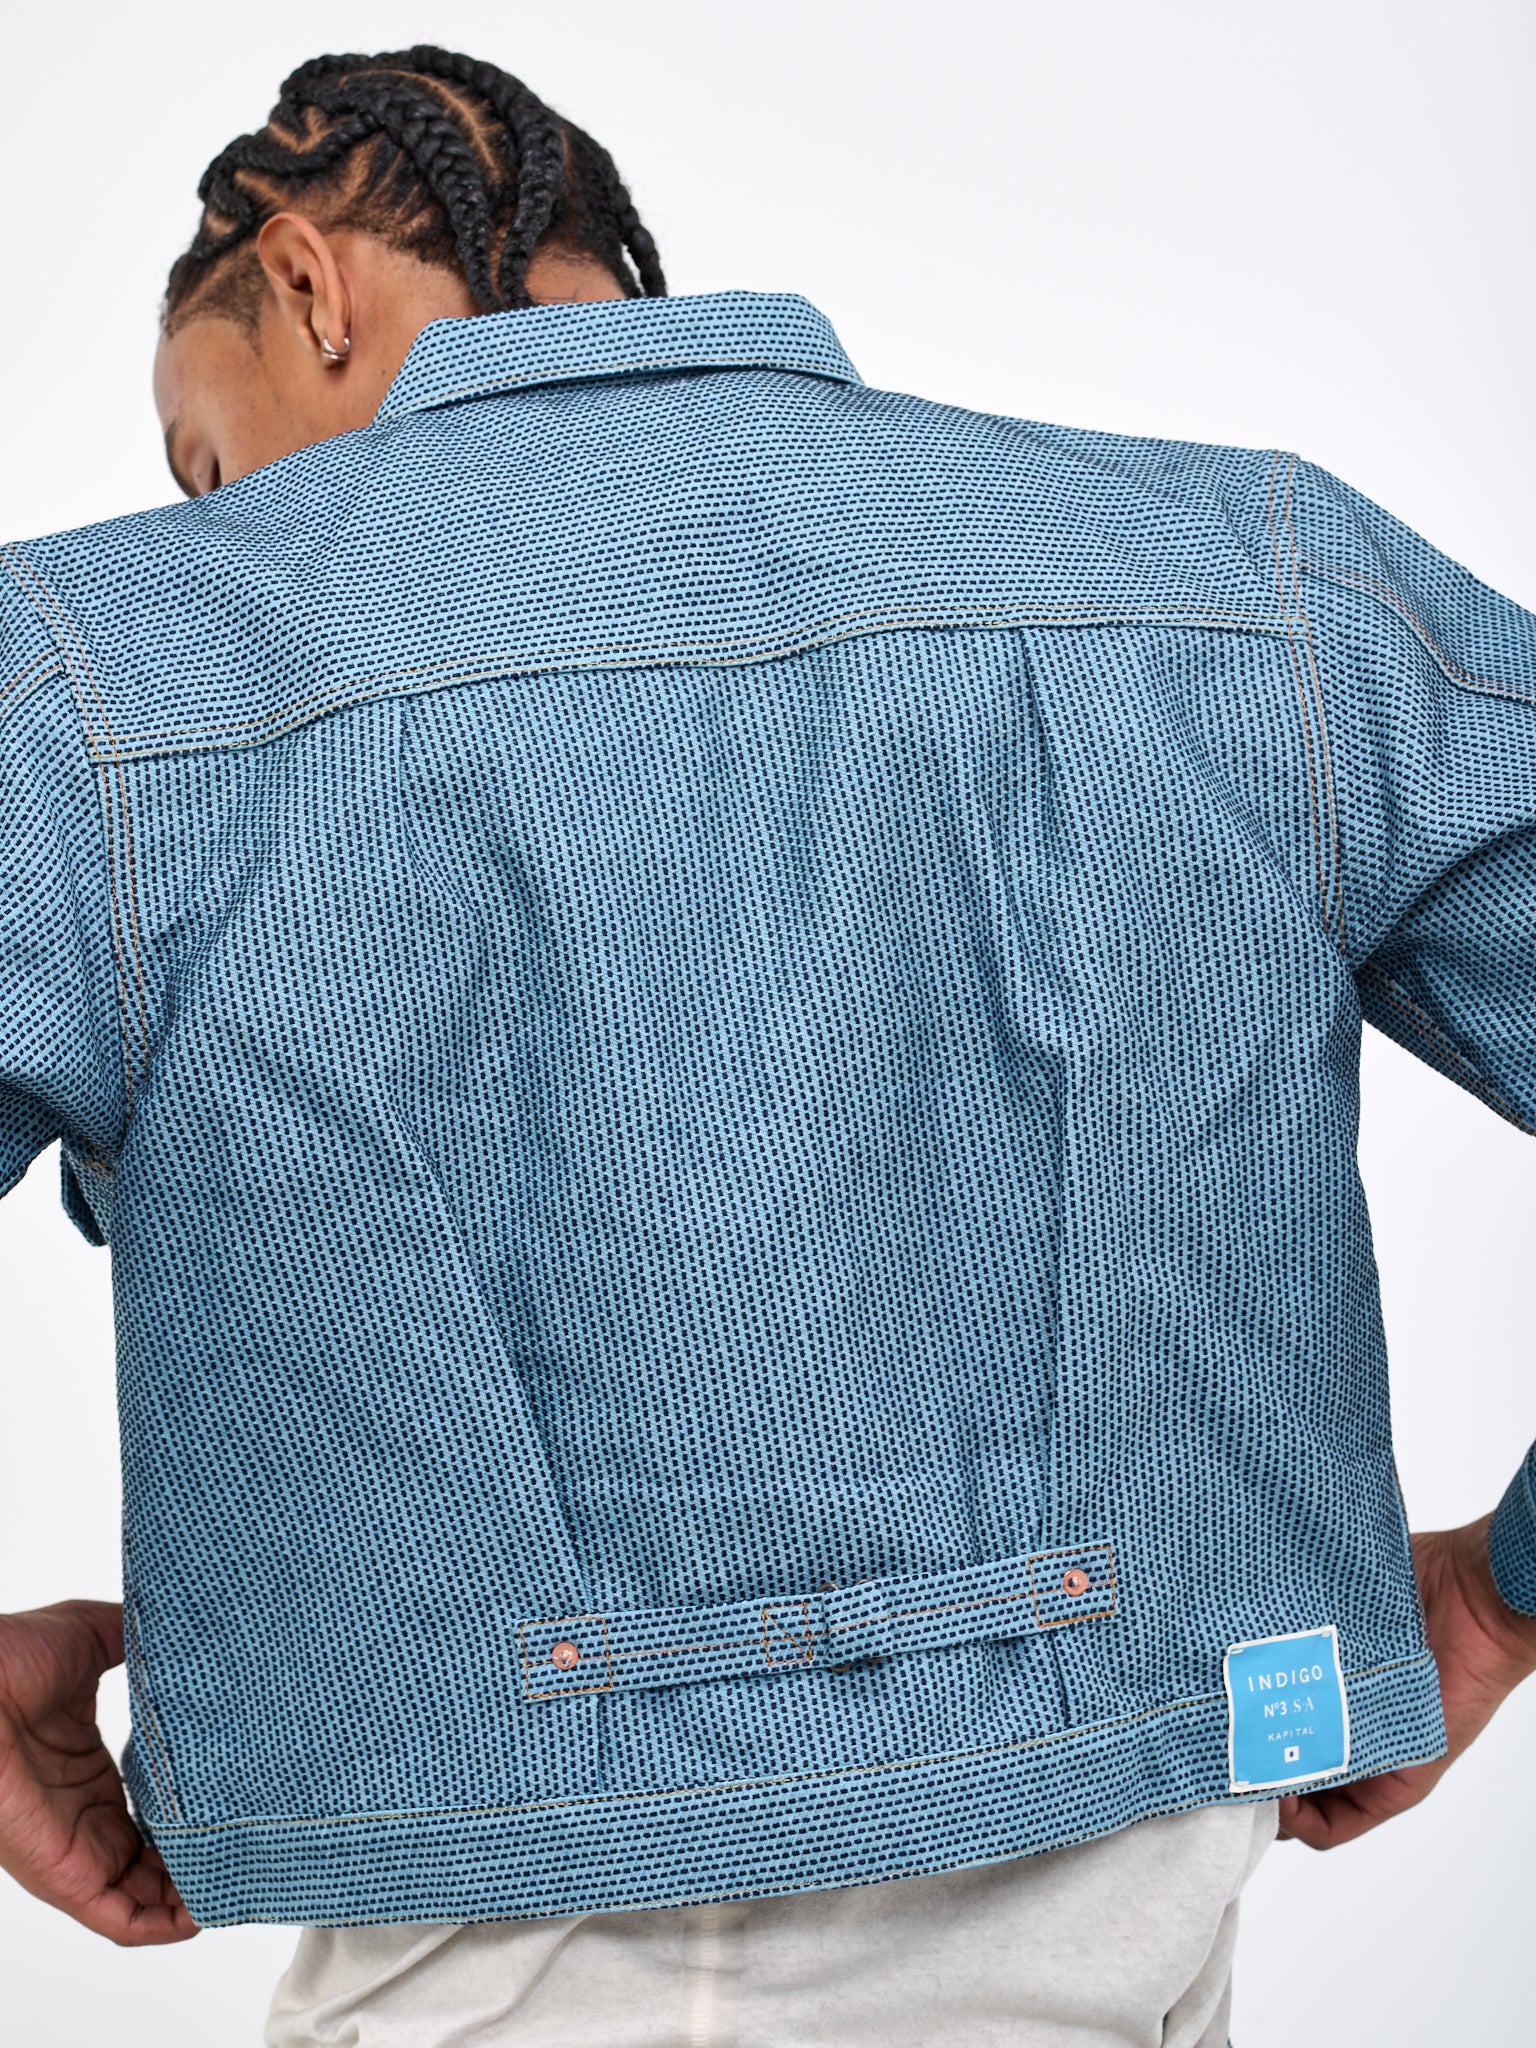 KAPITAL Stitched Jacket | H. Lorenzo - detail 2